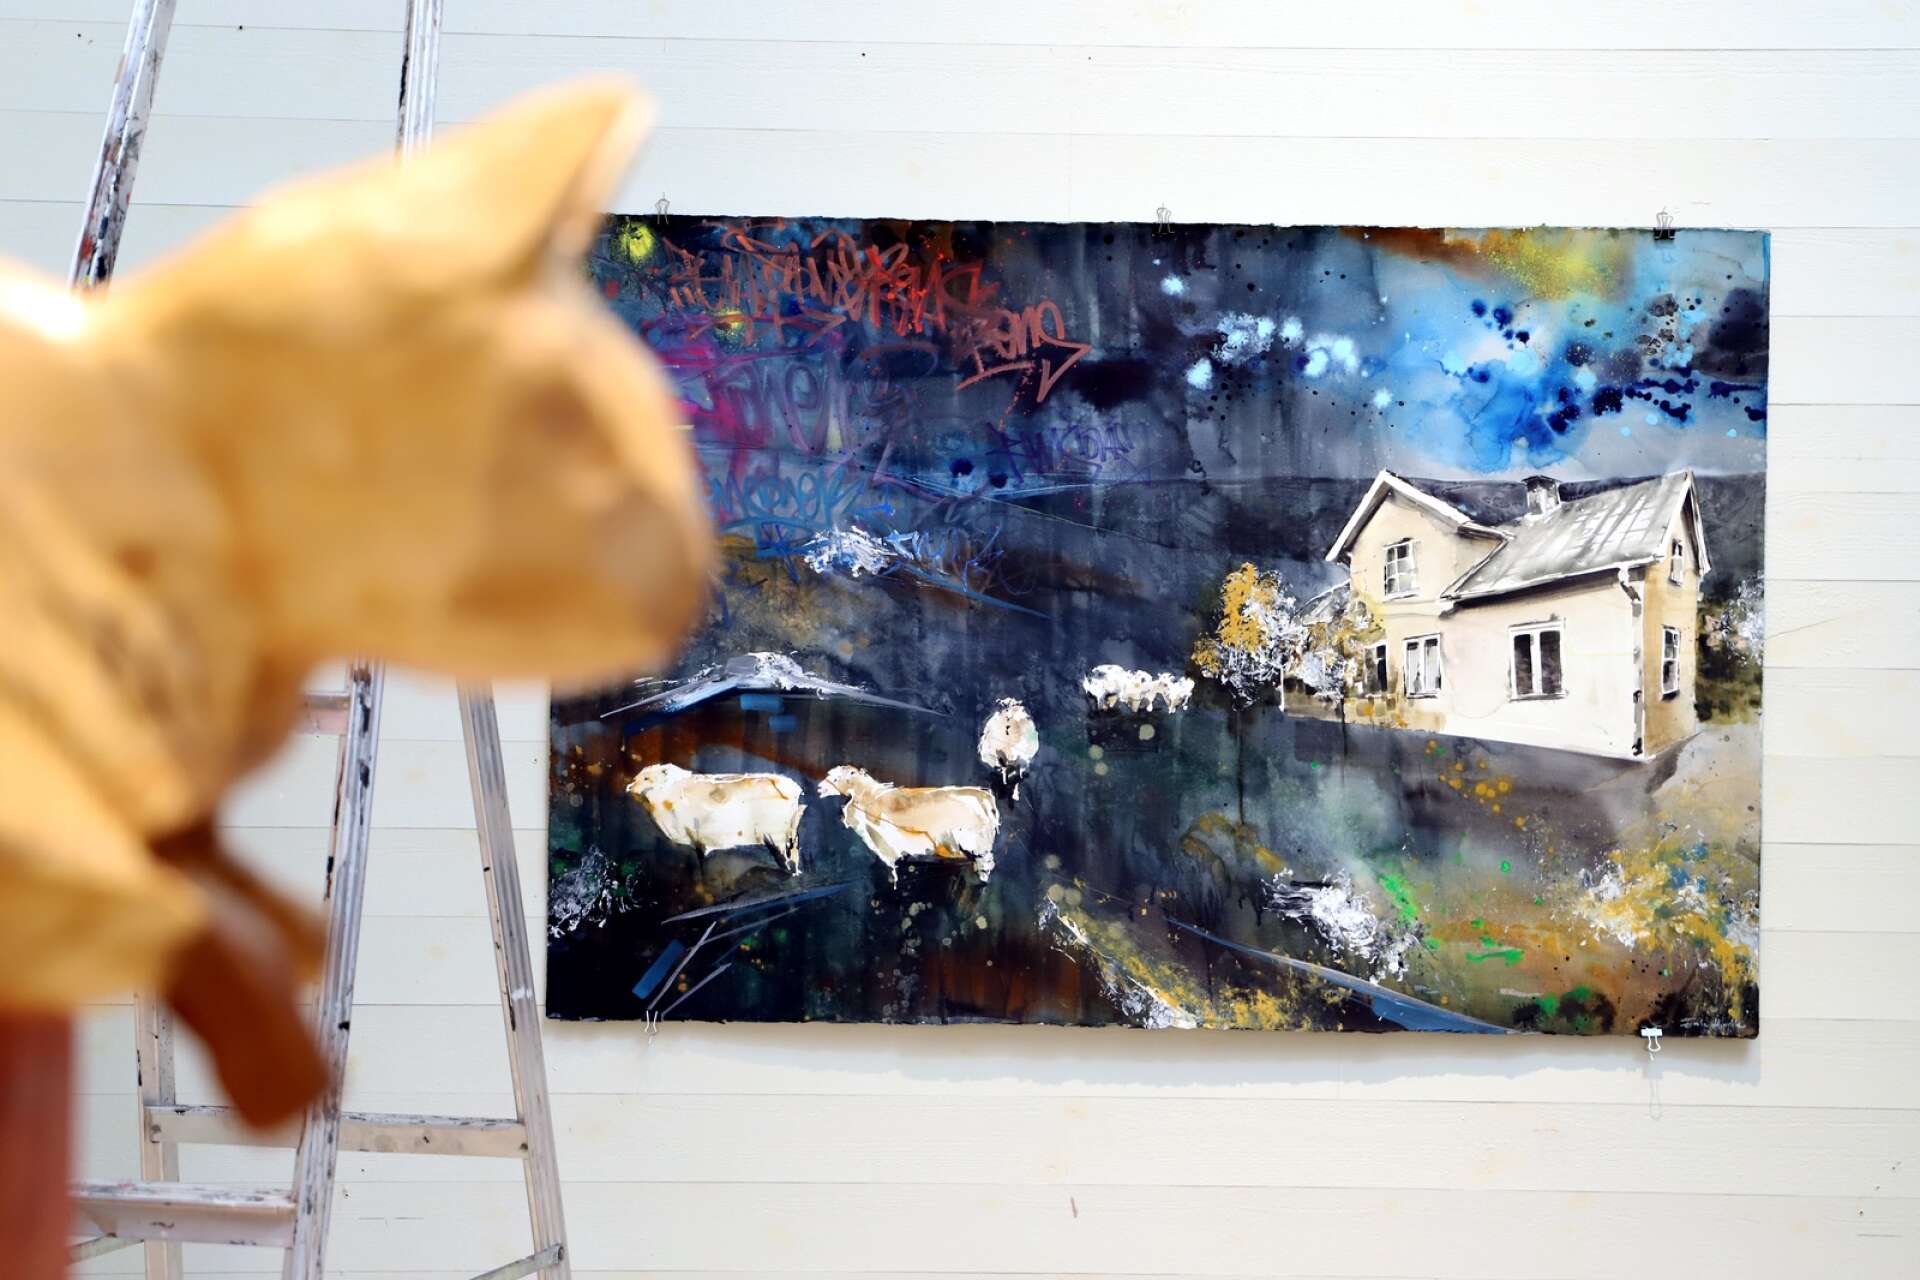 Henric Ernstson, Kil, har skulpterat katten som ser ut att vara på väg att hoppa in i Erik Hjorths målning Landet.